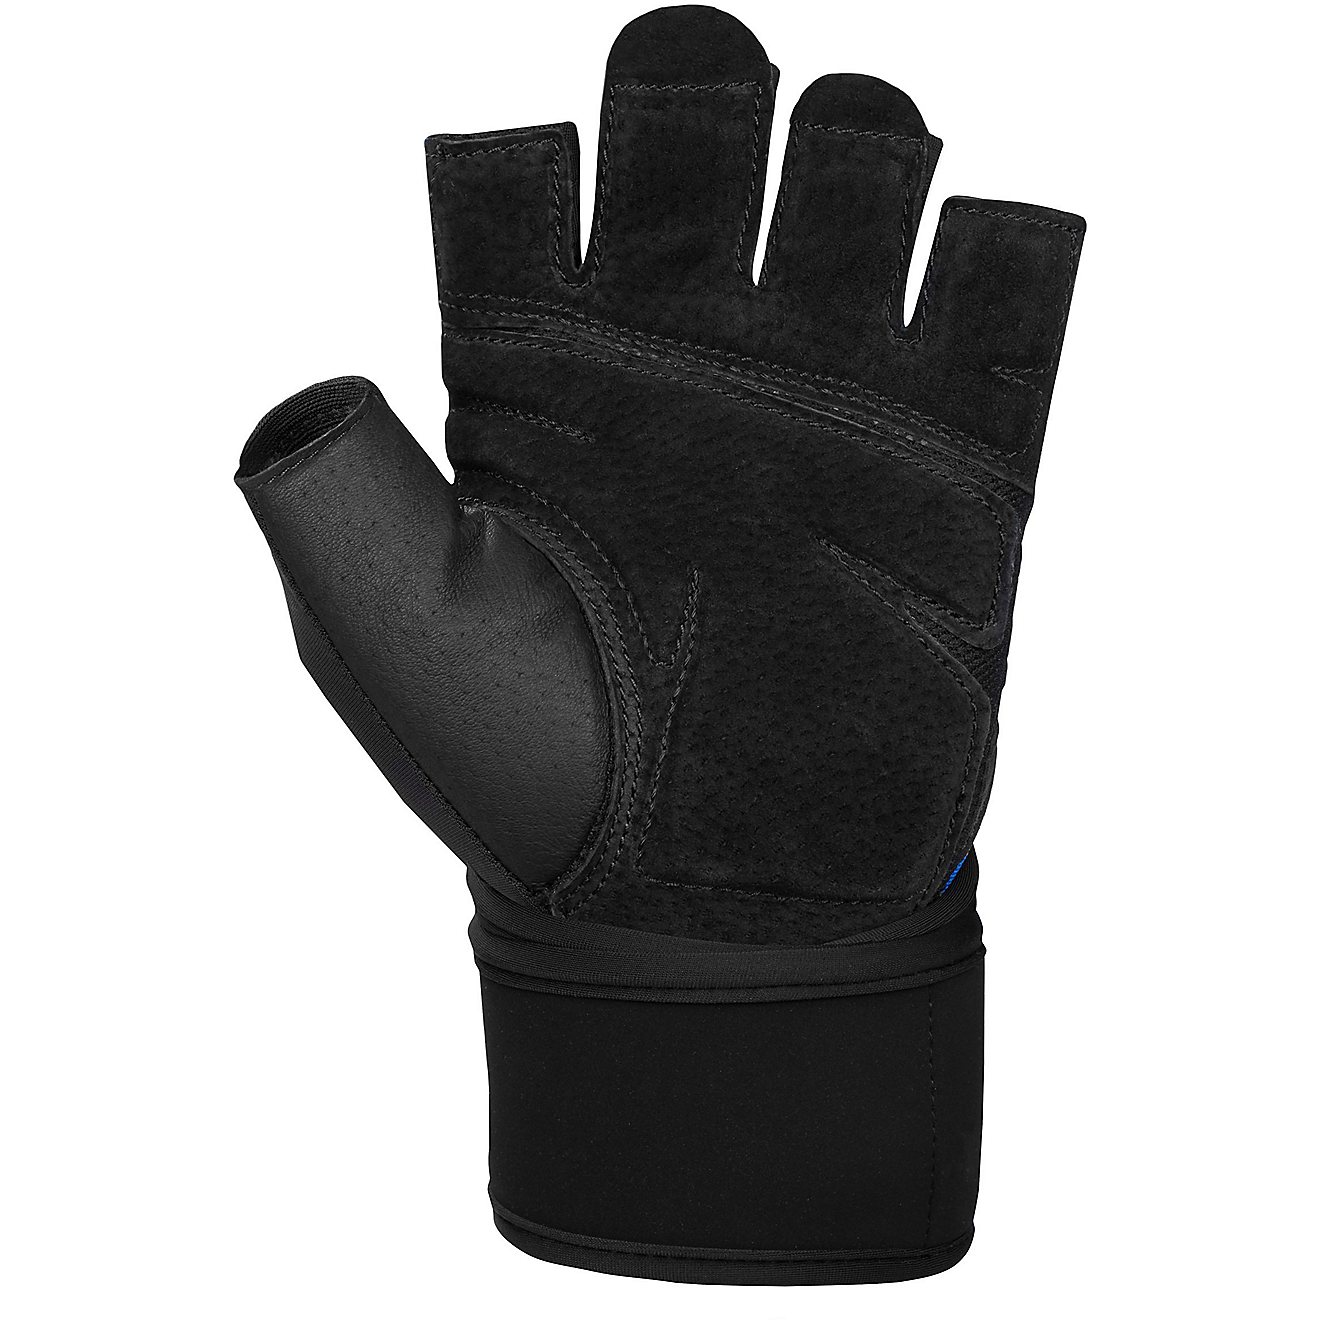 Harbinger Men's Training Grip Gloves